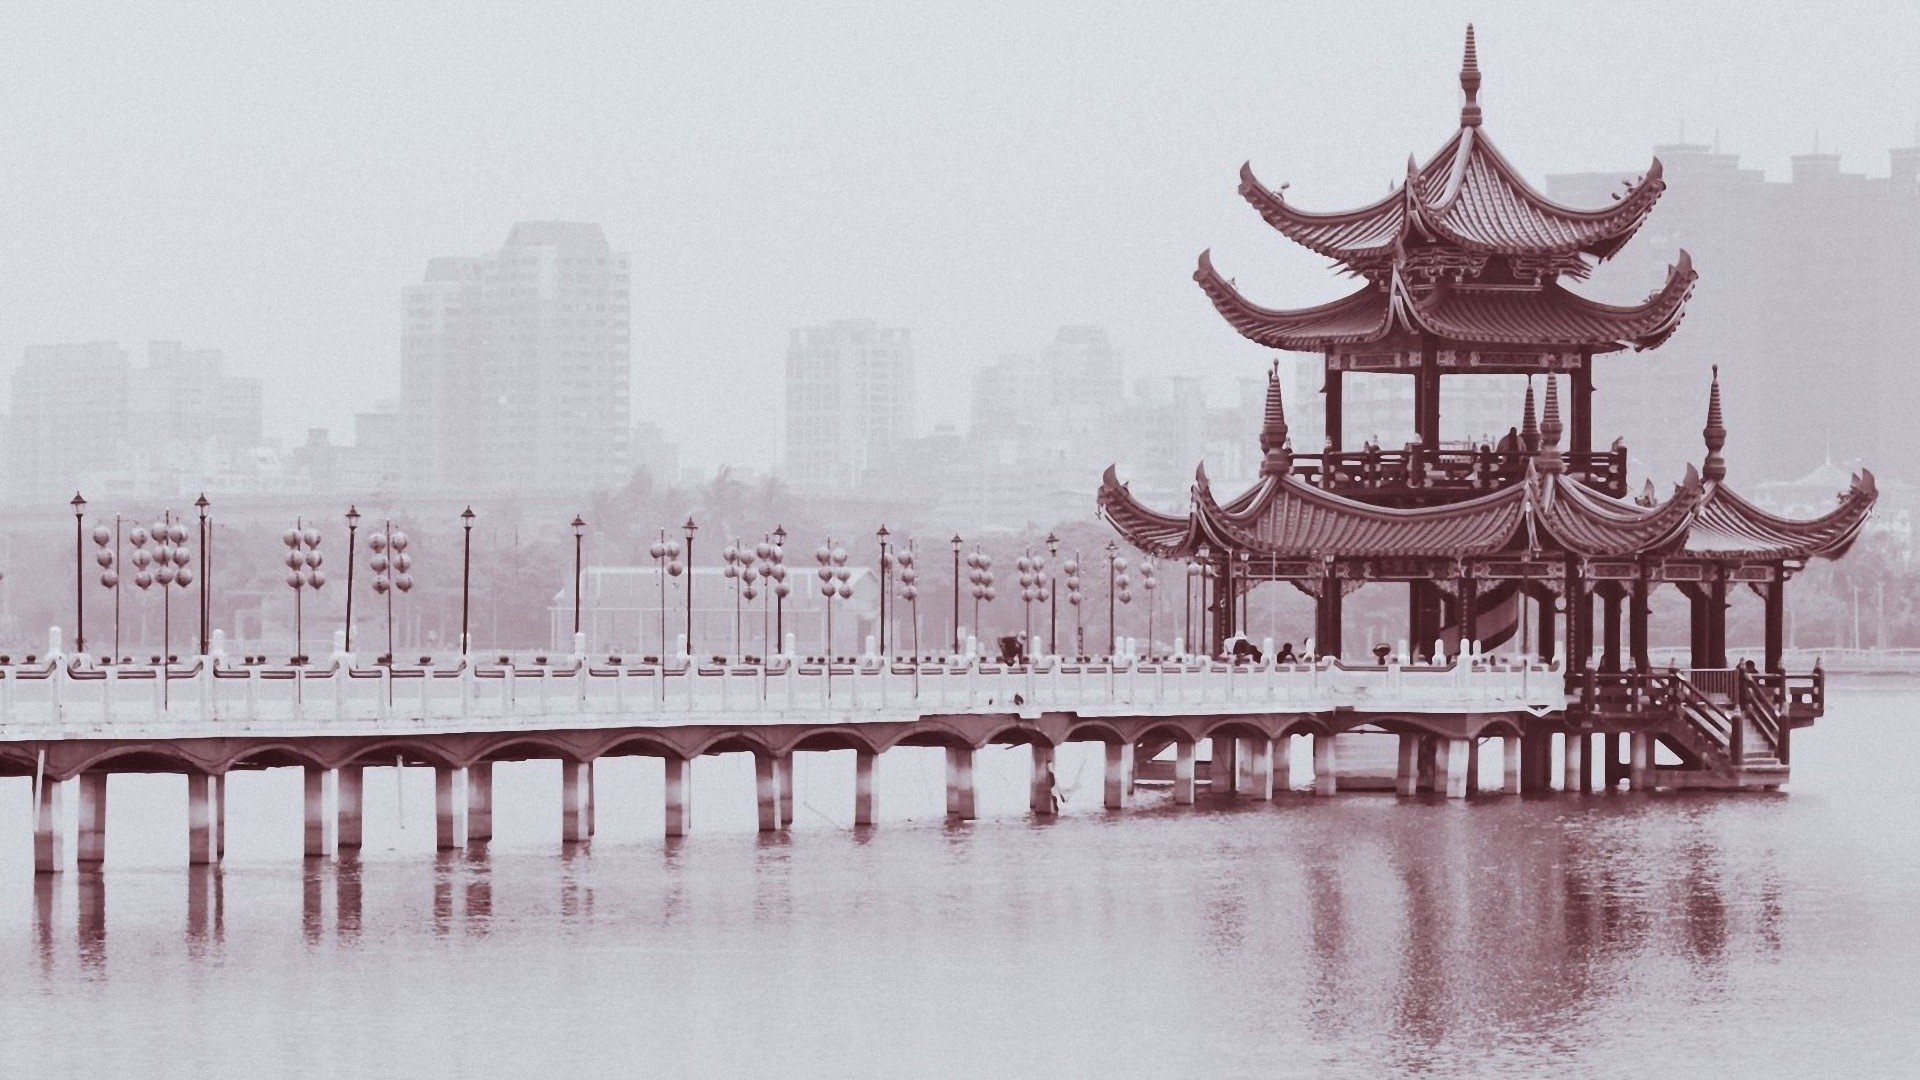 chinese monochrome 1920x1080 wallpaper Design bridges buildings black 1920x1080